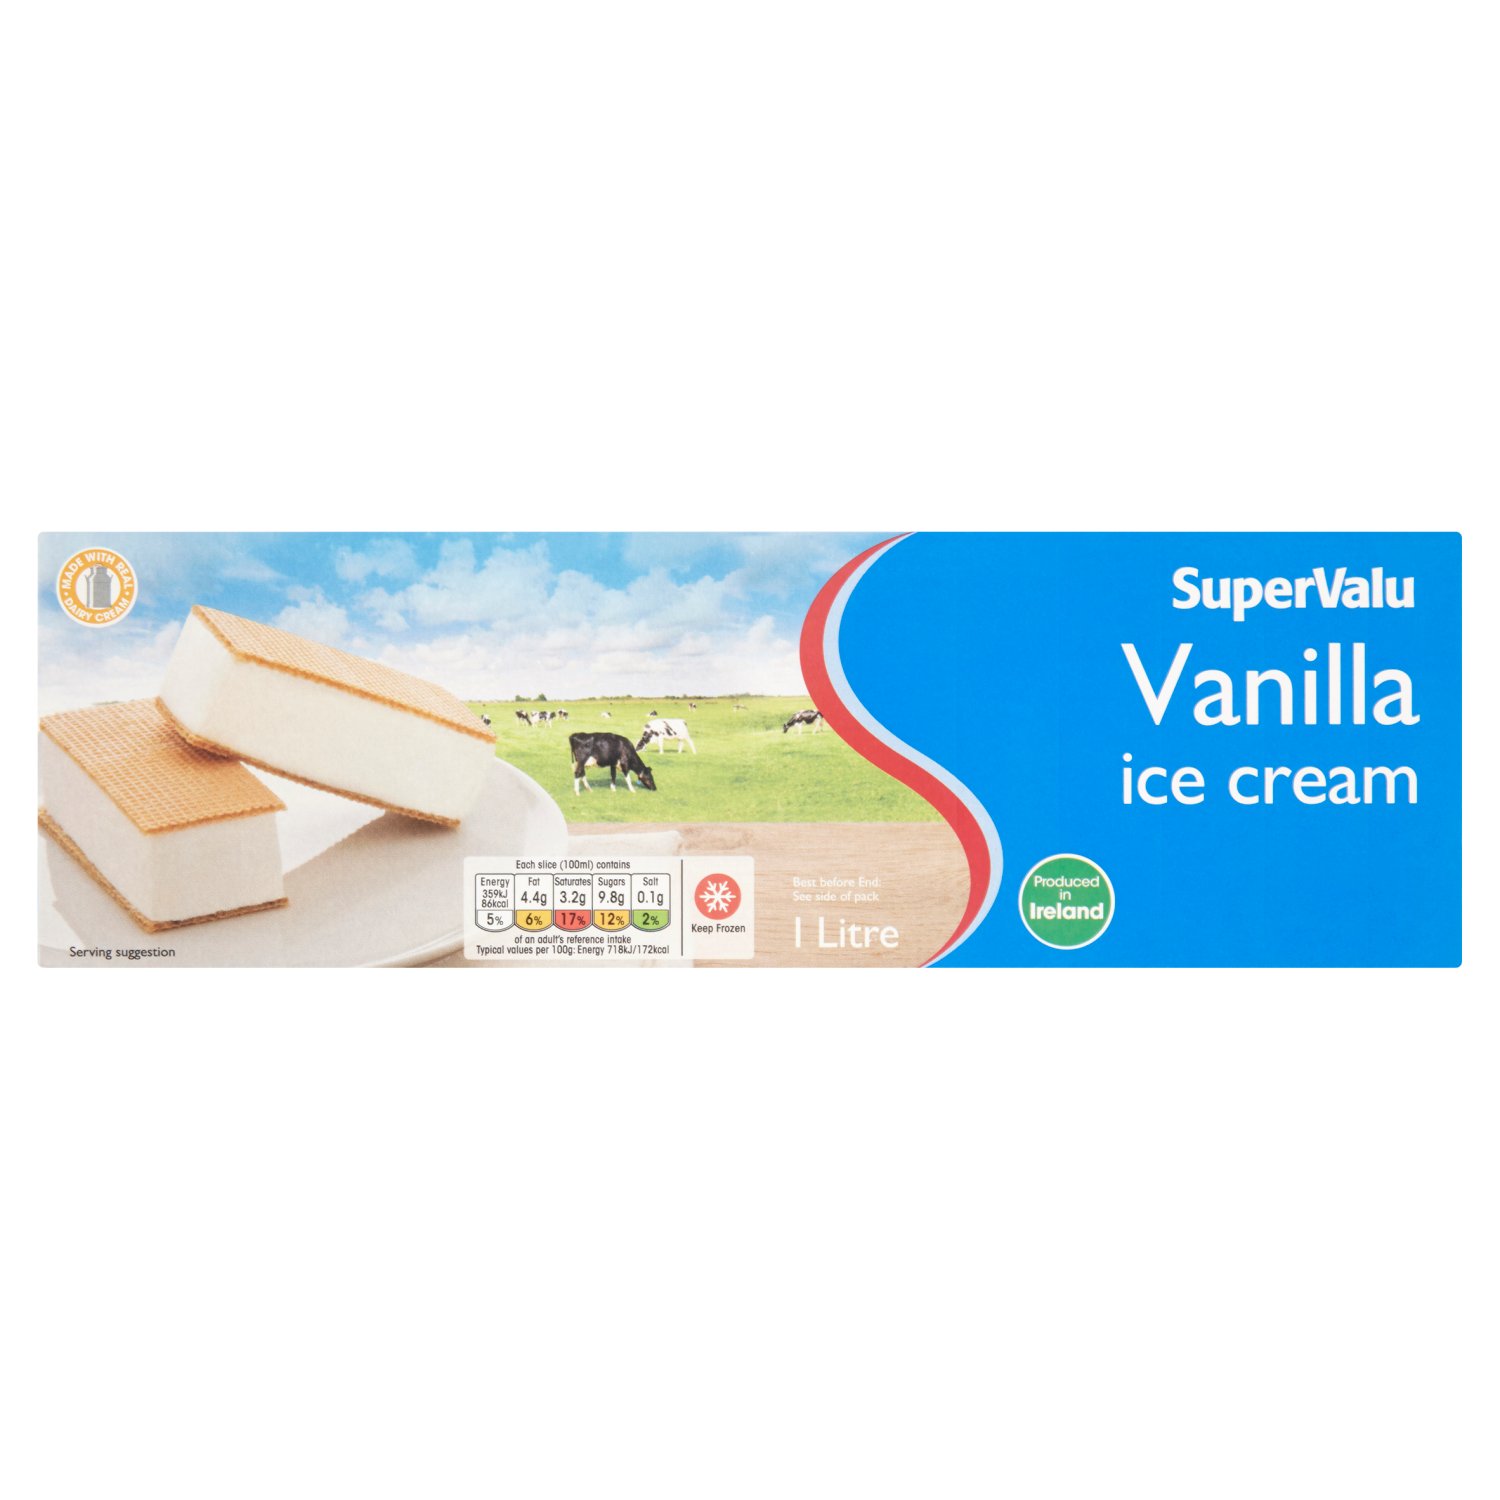 SuperValu Vanilla Ice Cream (1 L)